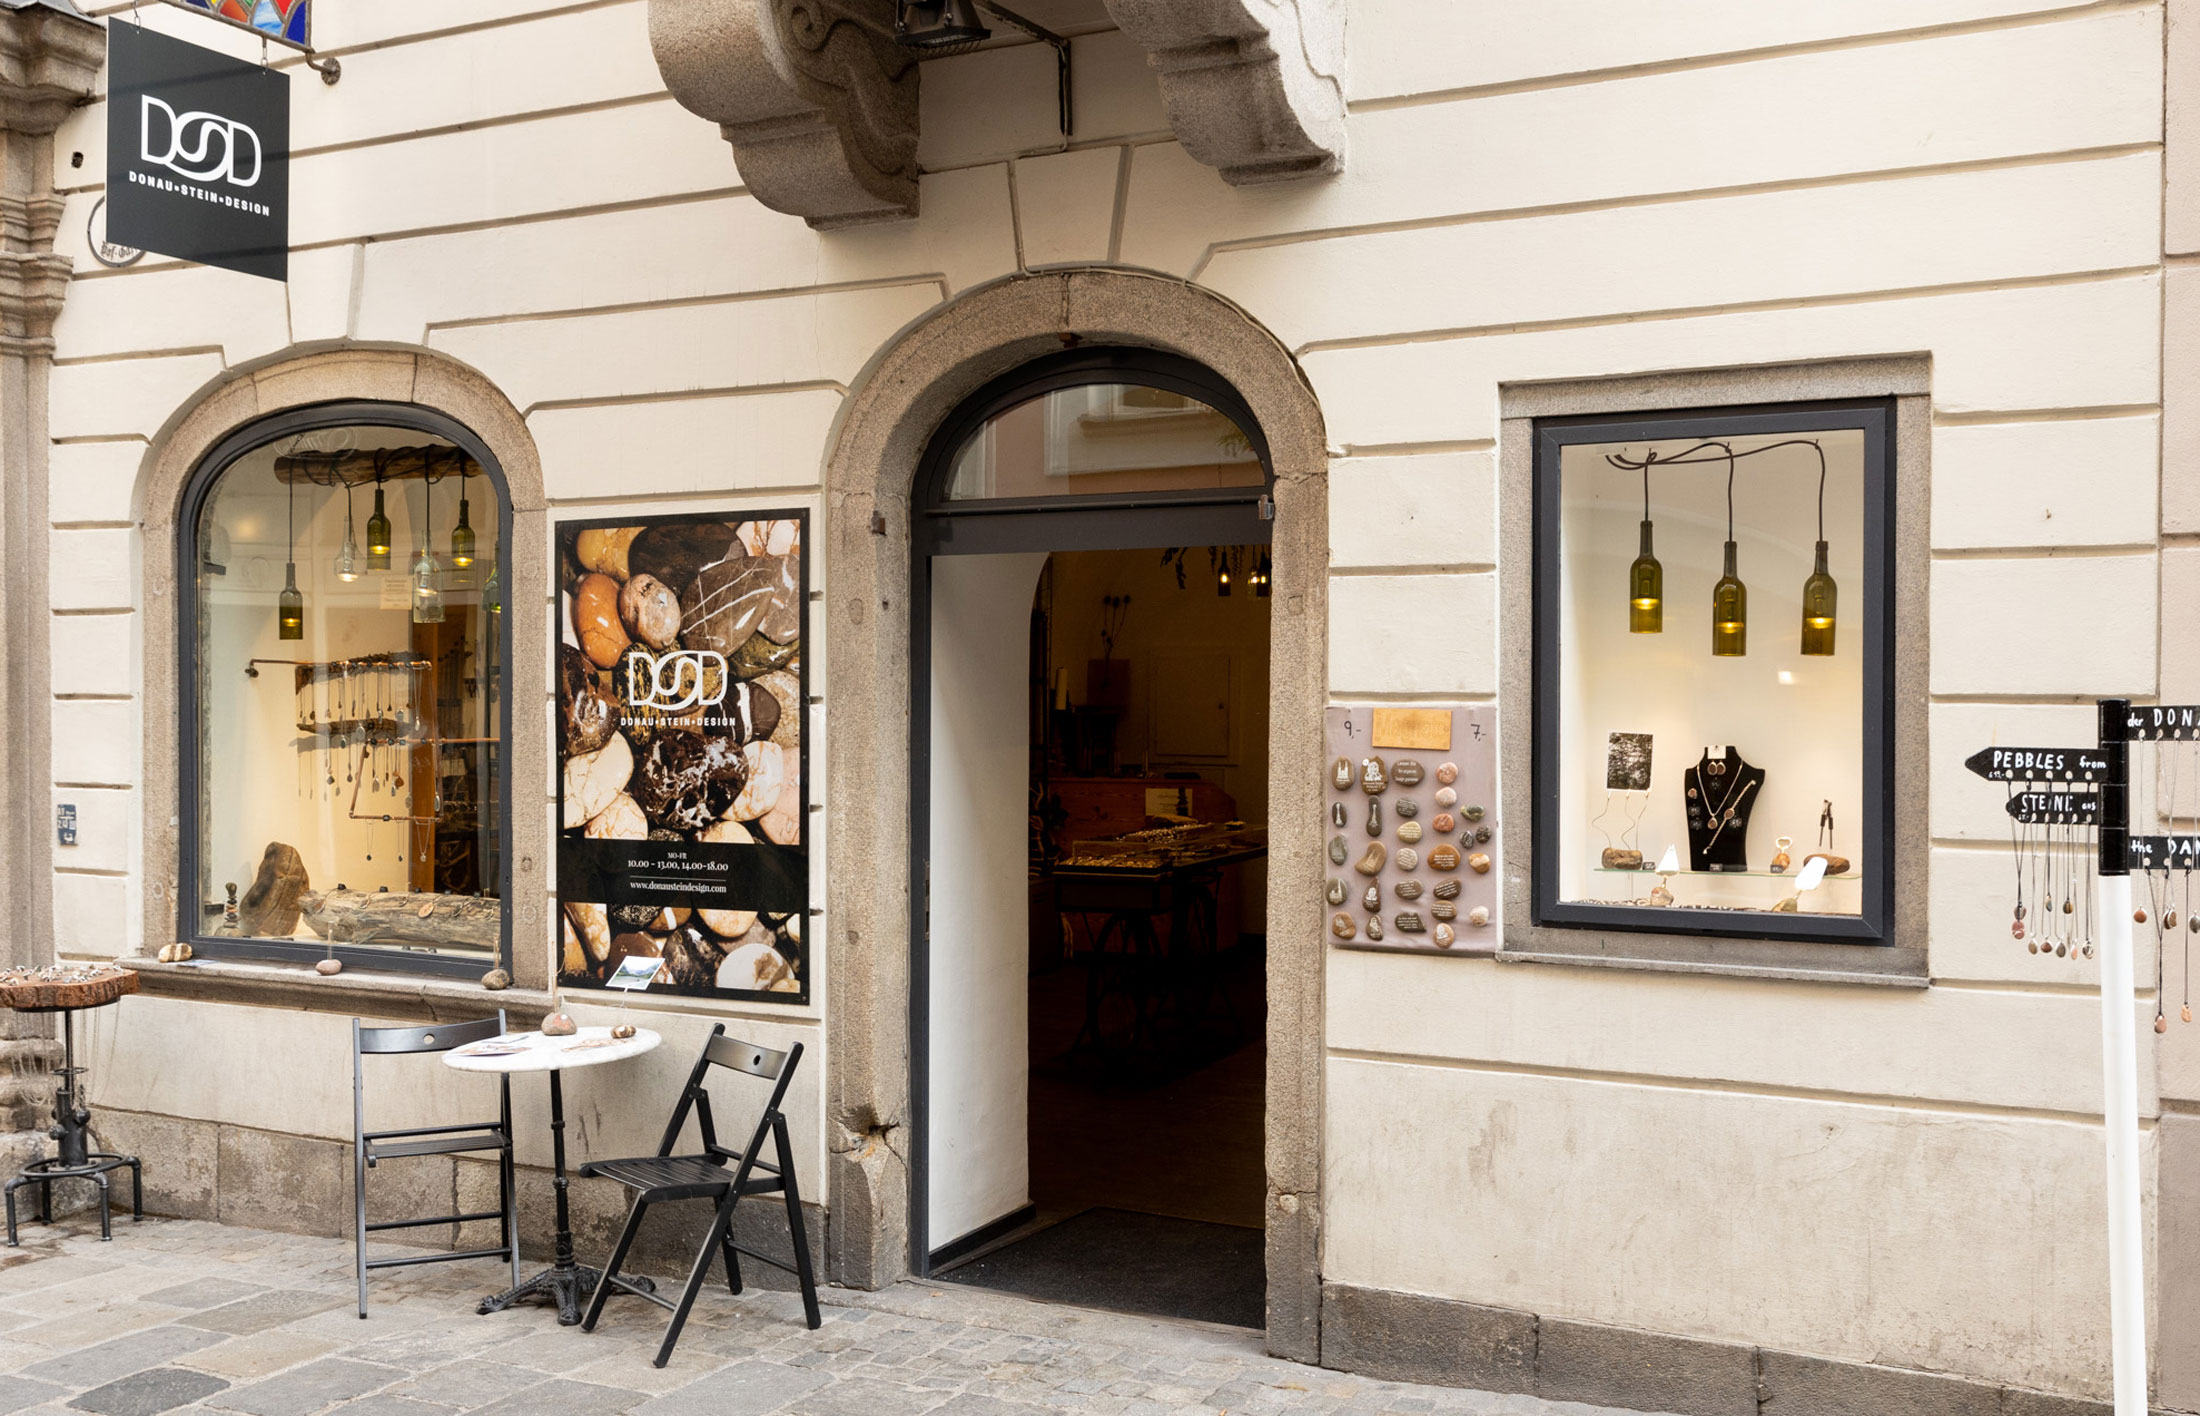 Der kleine Store in der Linzer Altstadt von außen.